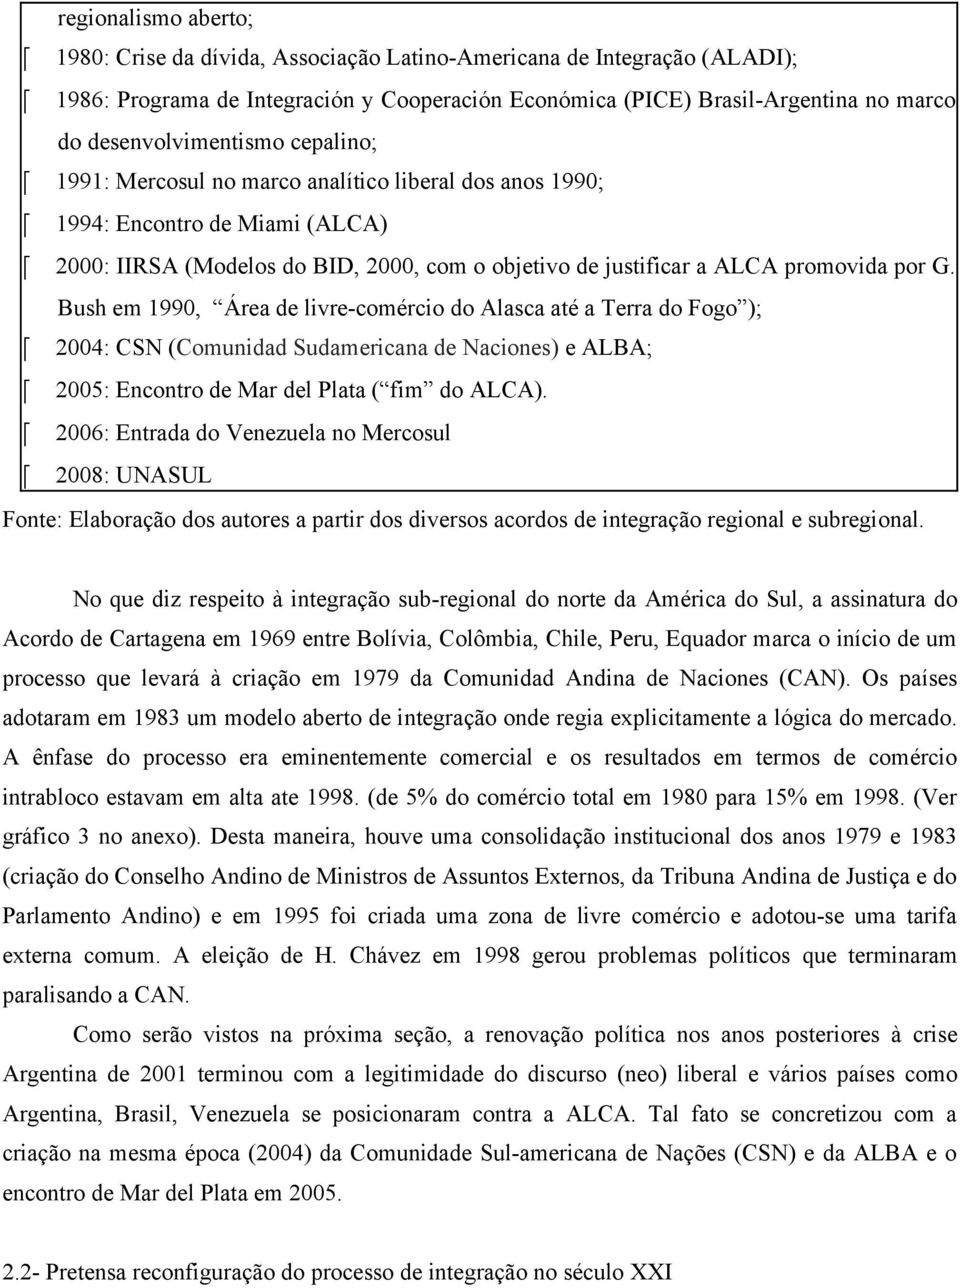 por G. Bush em 1990, Área de livre-comércio do Alasca até a Terra do Fogo ); 2004: CSN (Comunidad Sudamericana de Naciones) e ALBA; 2005: Encontro de Mar del Plata ( fim do ALCA).